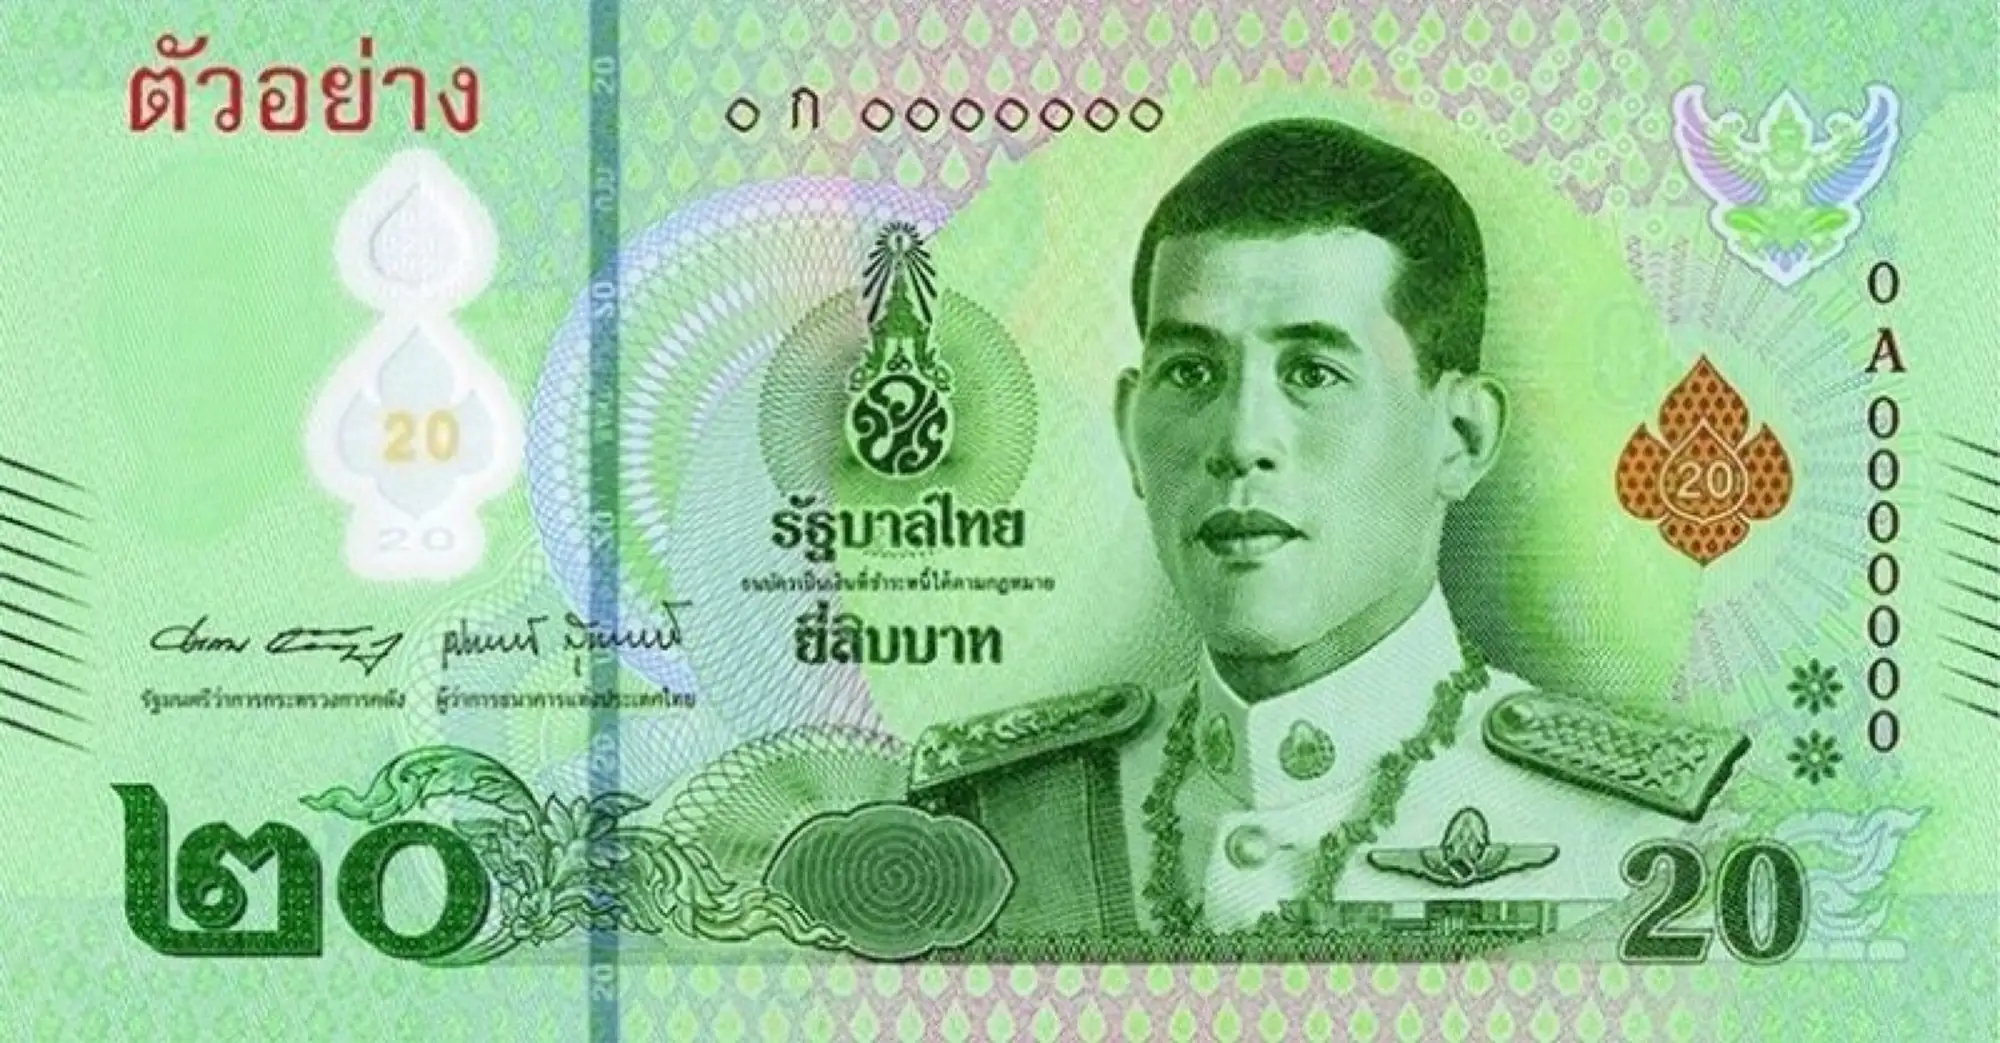 一百万泰铢是多少人民币，100万泰铢是多少元人民币？